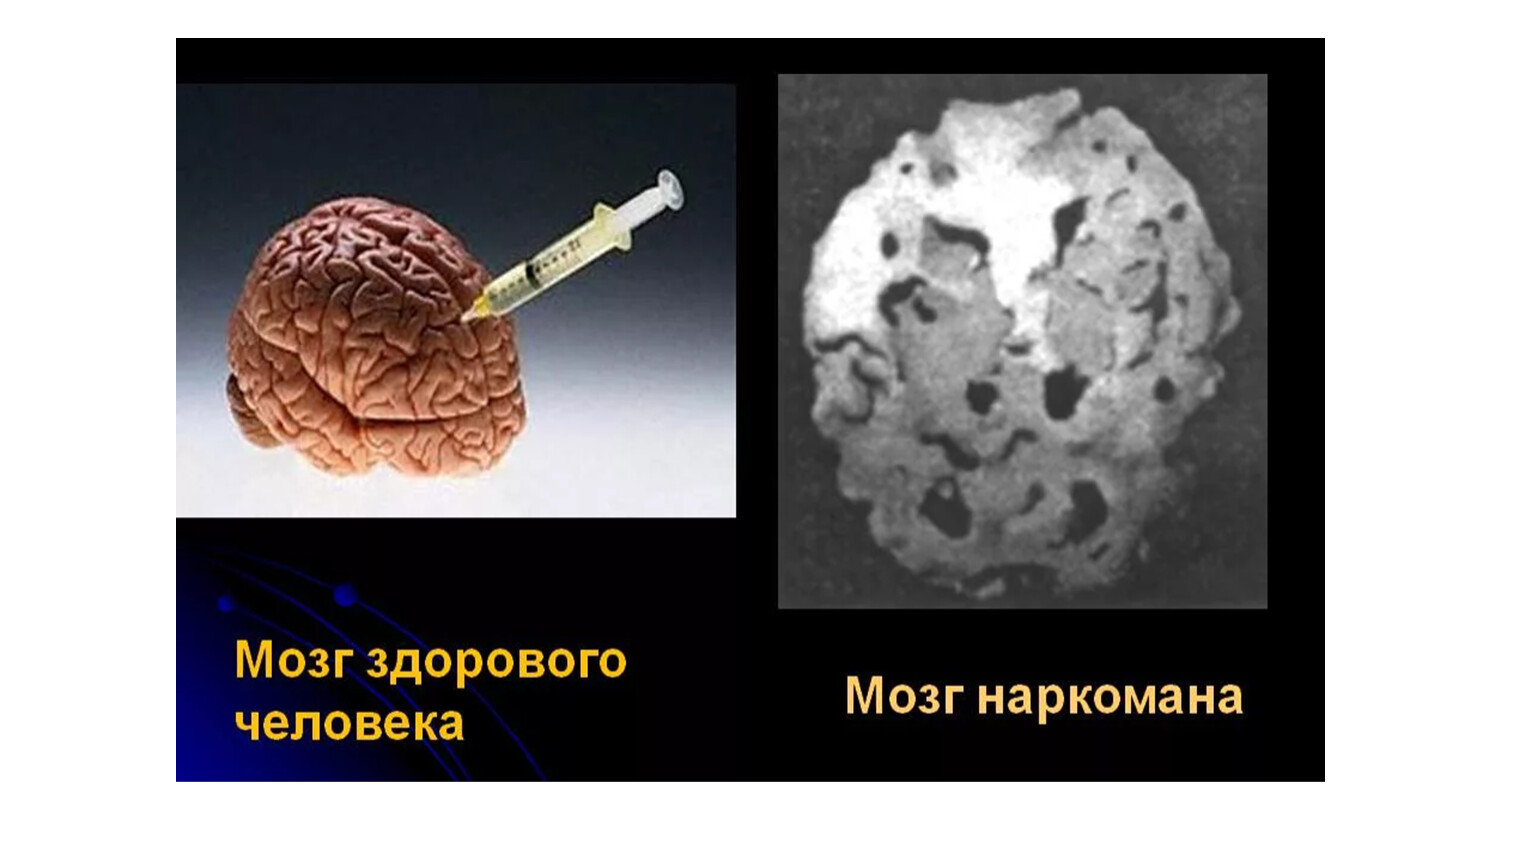 Мозг и влияние наркотиков конопля непохожая на коноплю